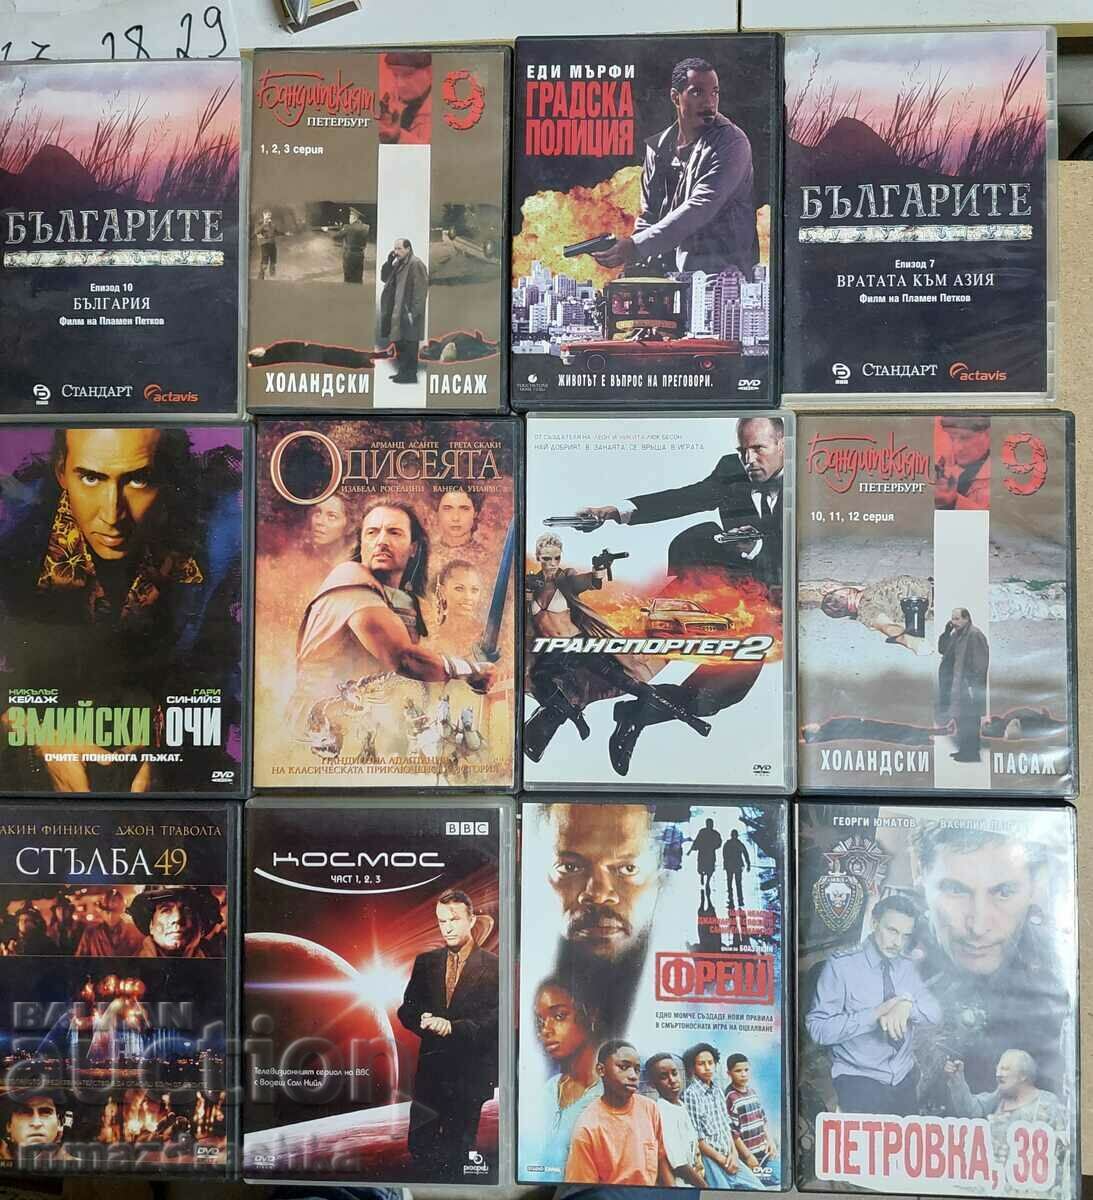 Original DVD Movies, Lot 5